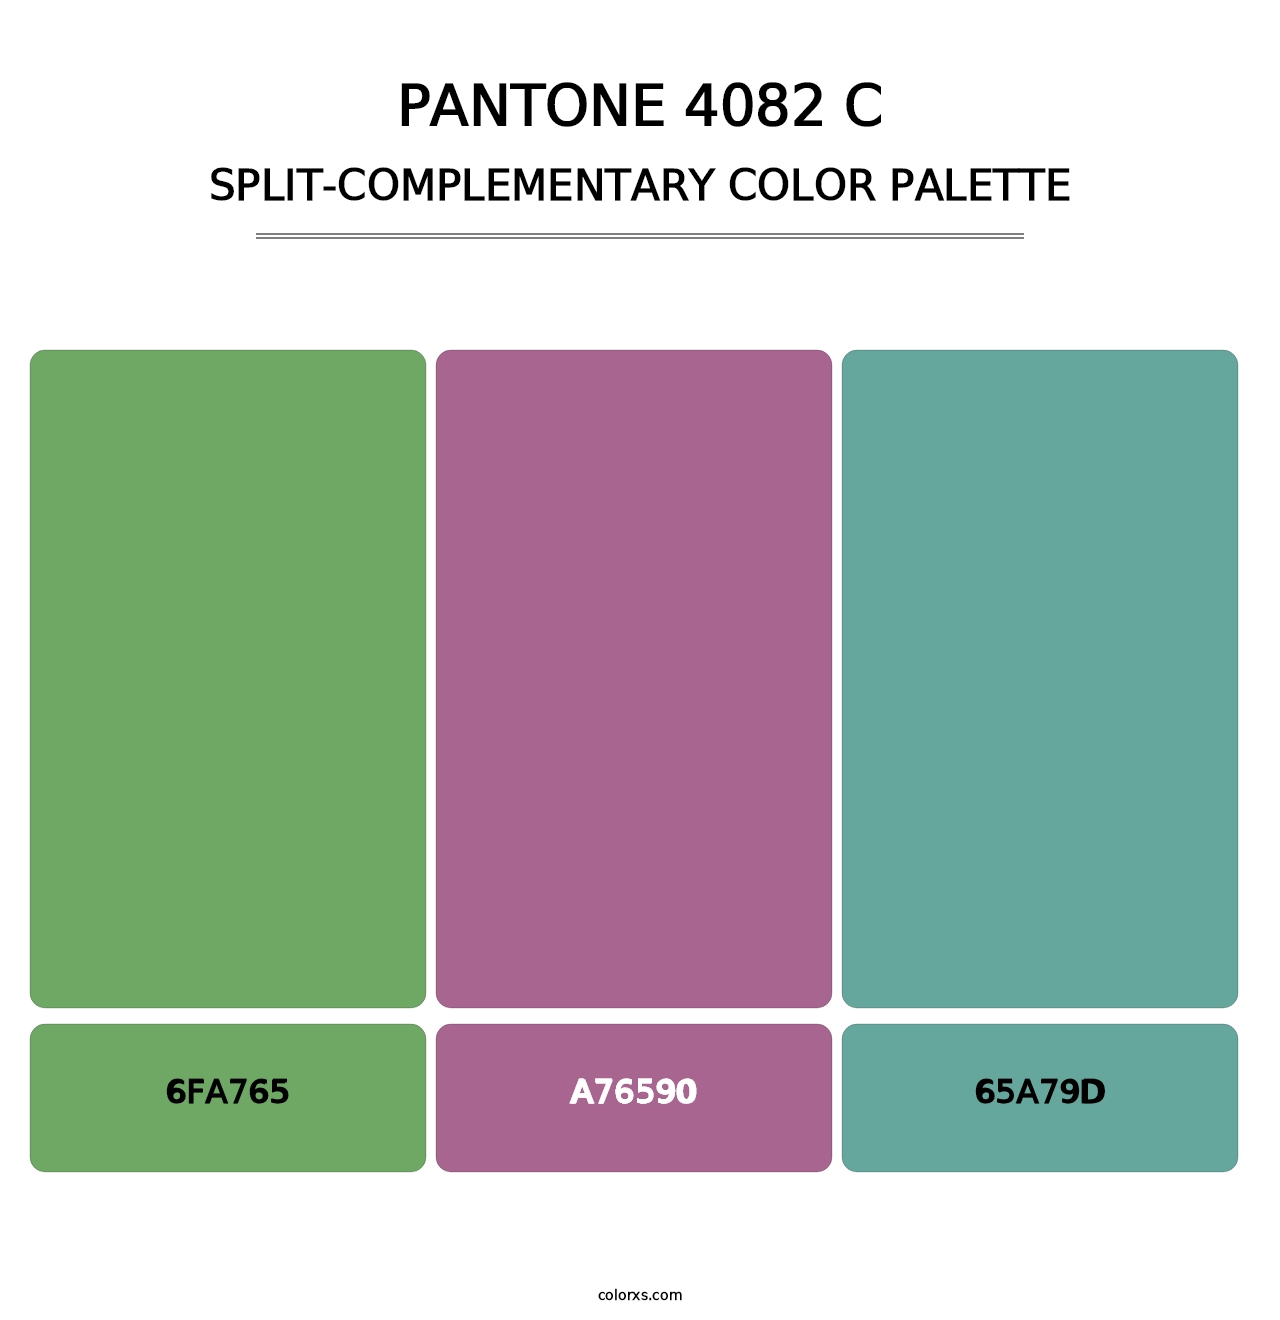 PANTONE 4082 C - Split-Complementary Color Palette